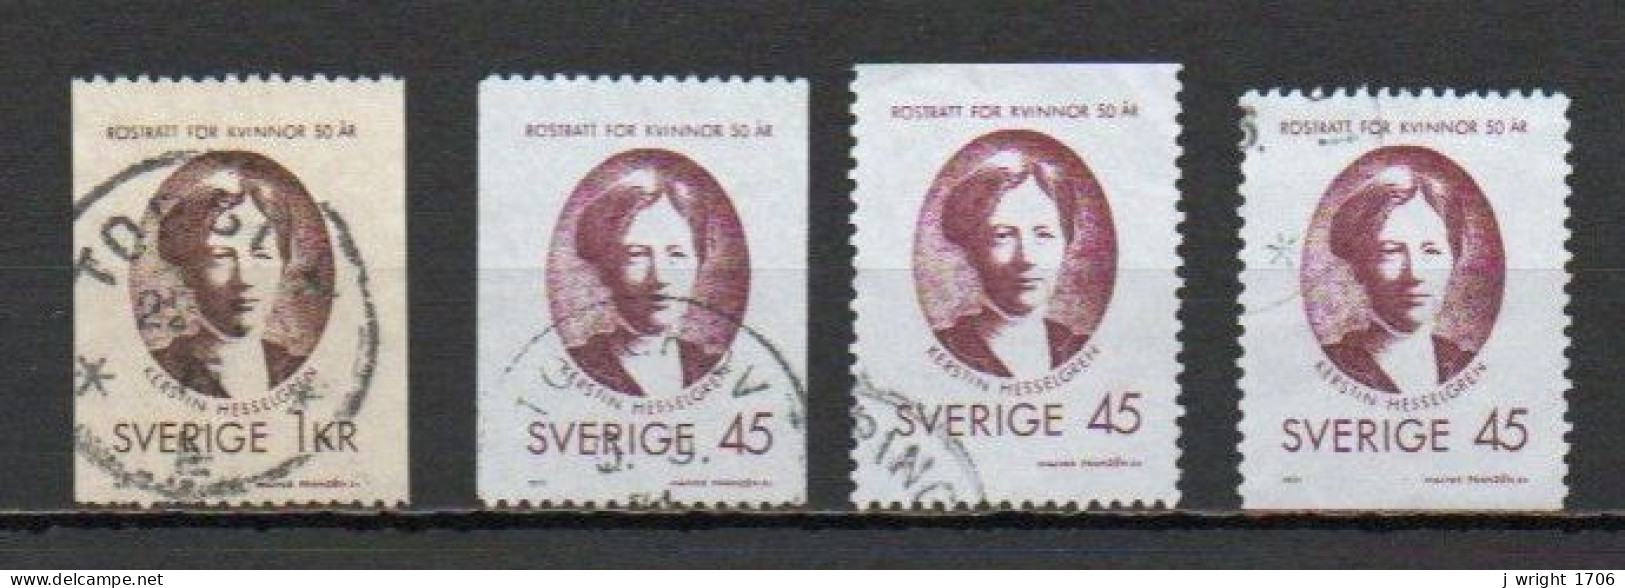 Sweden, 1971, Womens Suffrage, Set, USED - Oblitérés